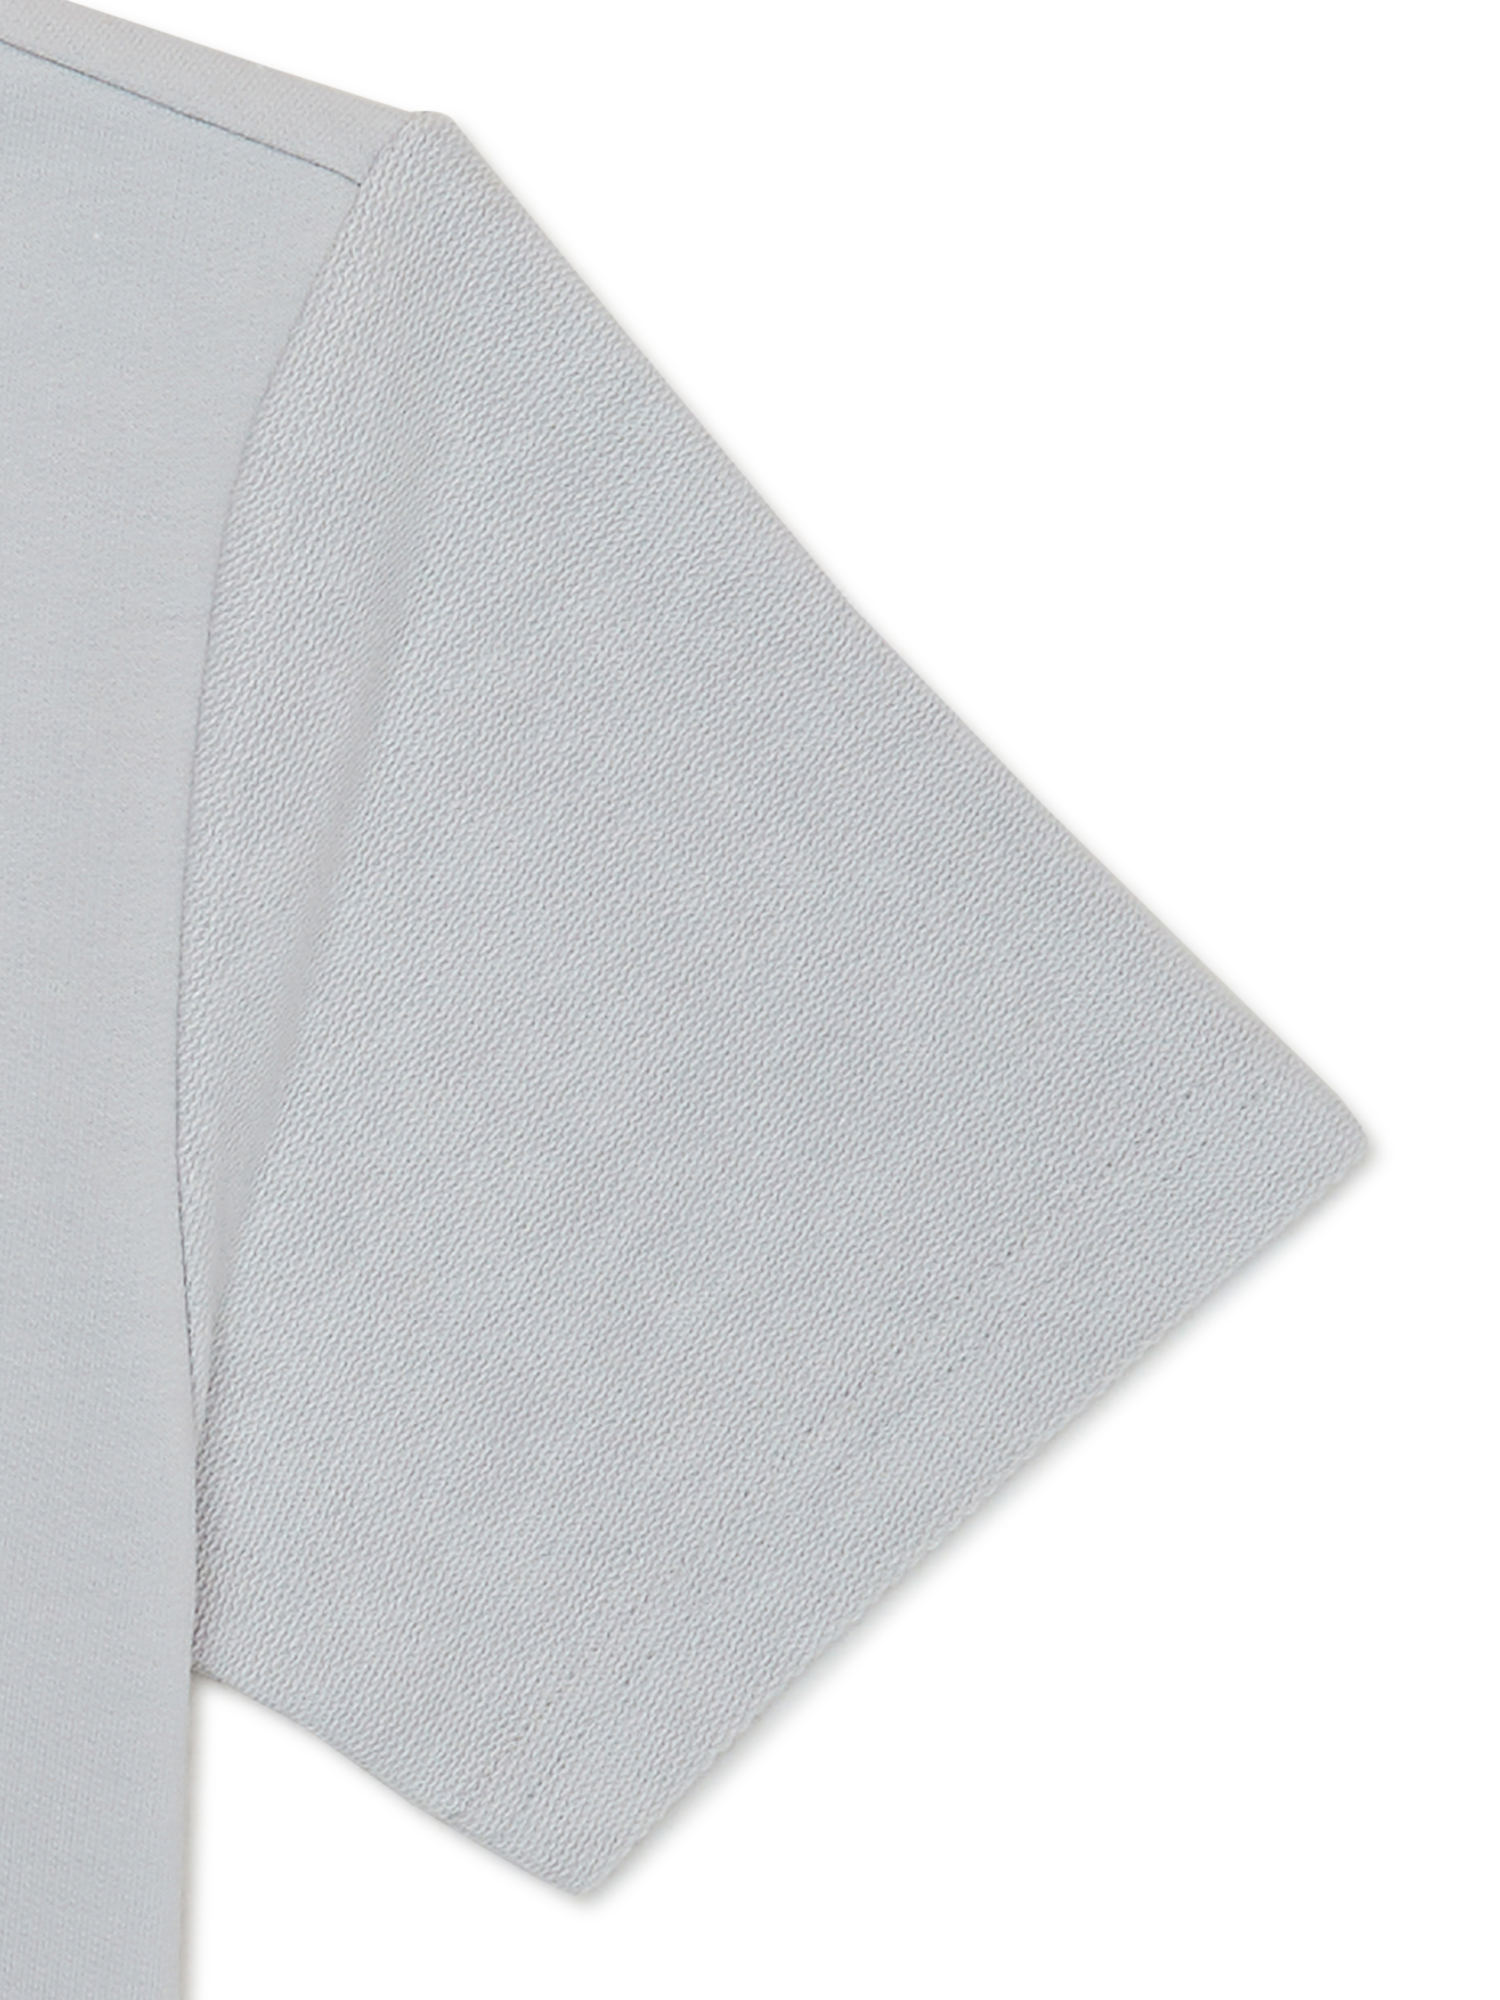 Wonder Nation Boys Short Sleeve Textured T-Shirt, Sizes 4-18 - image 3 of 3